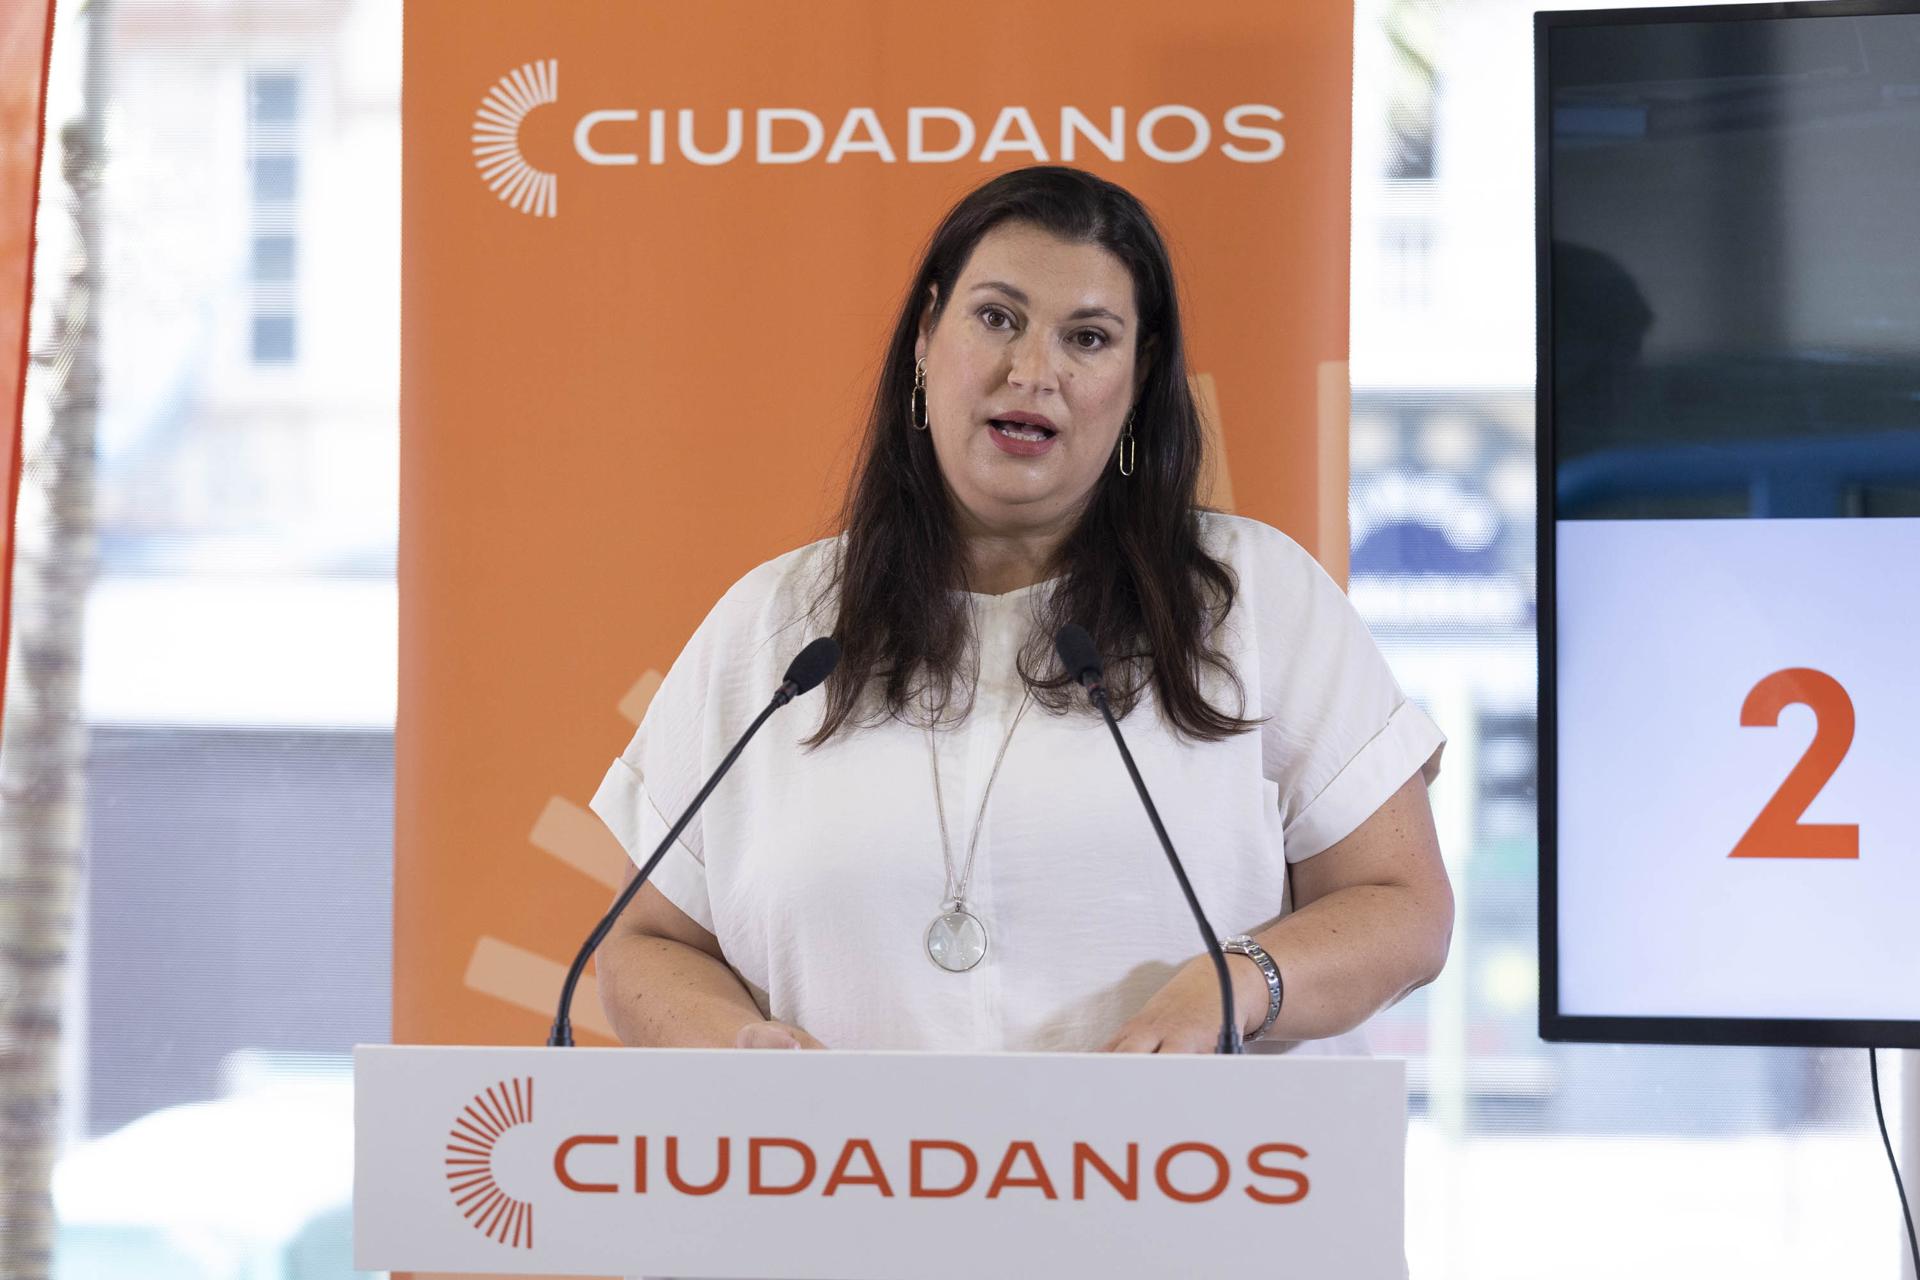 La candidata de Ciudadanos al Parlamento de Canarias, Isabel Bello, ha presentado su programa electoral para las elecciones del 28 de mayo. EFE/Miguel Barreto